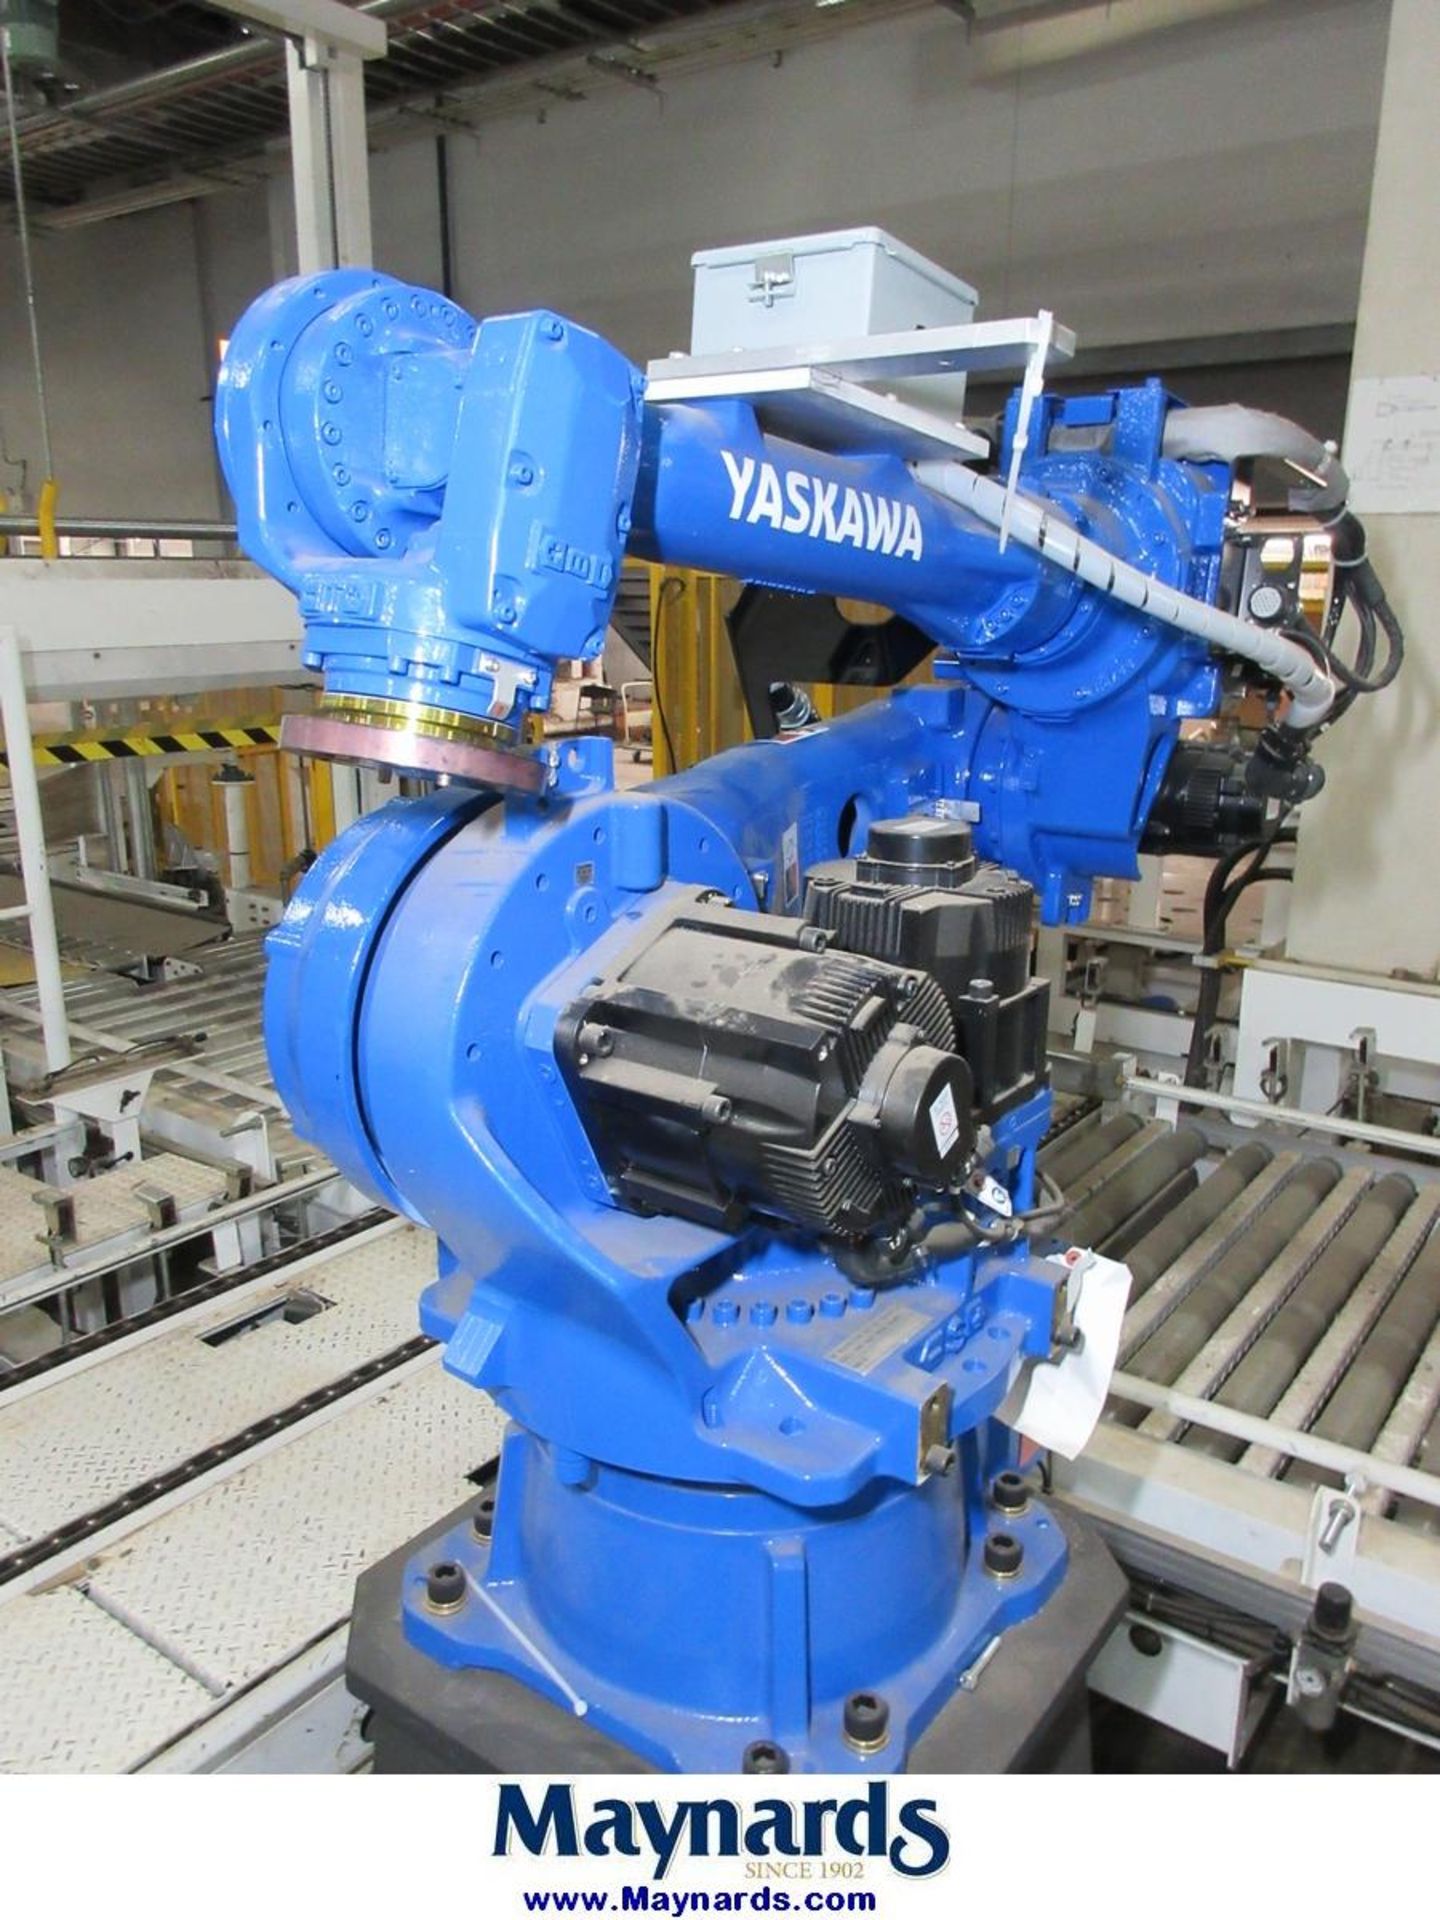 2017 Yaskawa Motoman MPL80II Type YR-MPL0080-J00 Material Handling Robot - Image 5 of 11